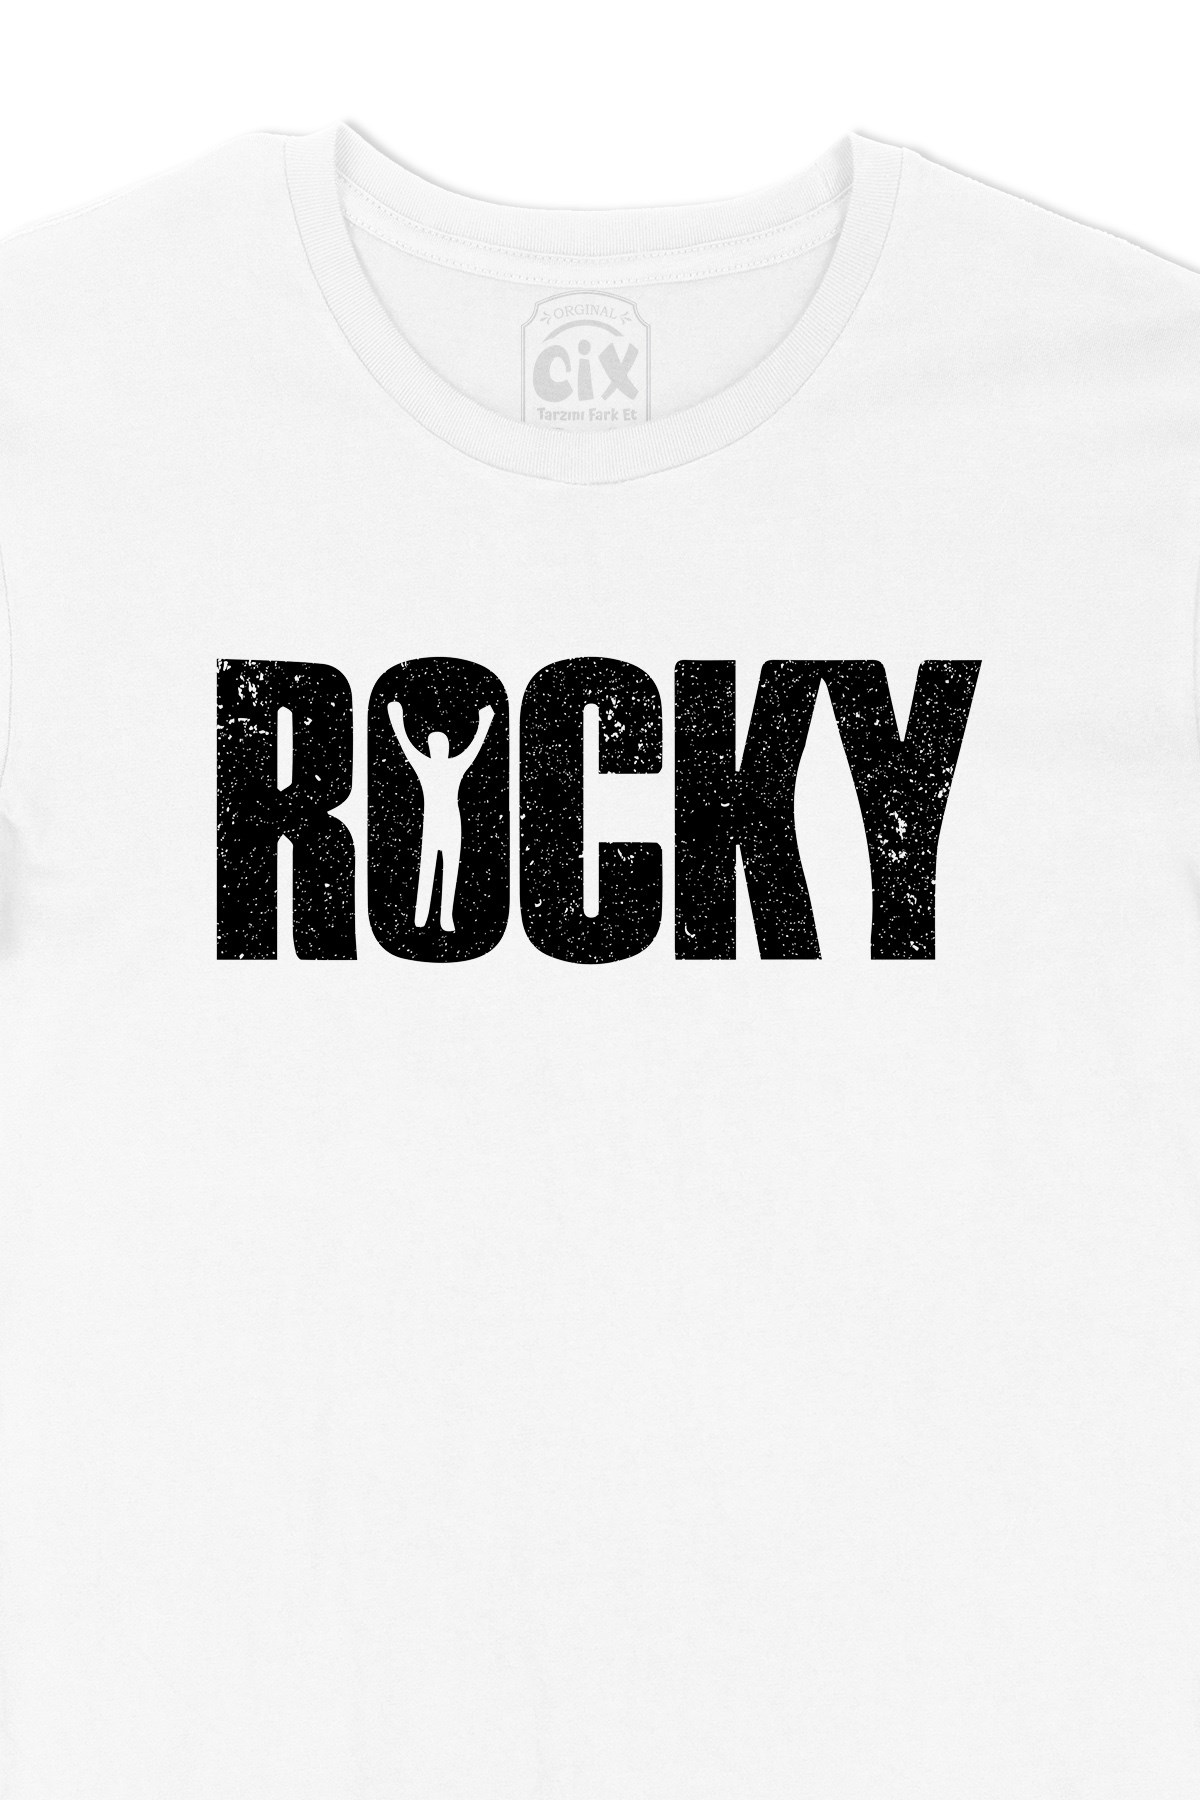 Cix Rocky Tişört - Ücretsiz Kargo